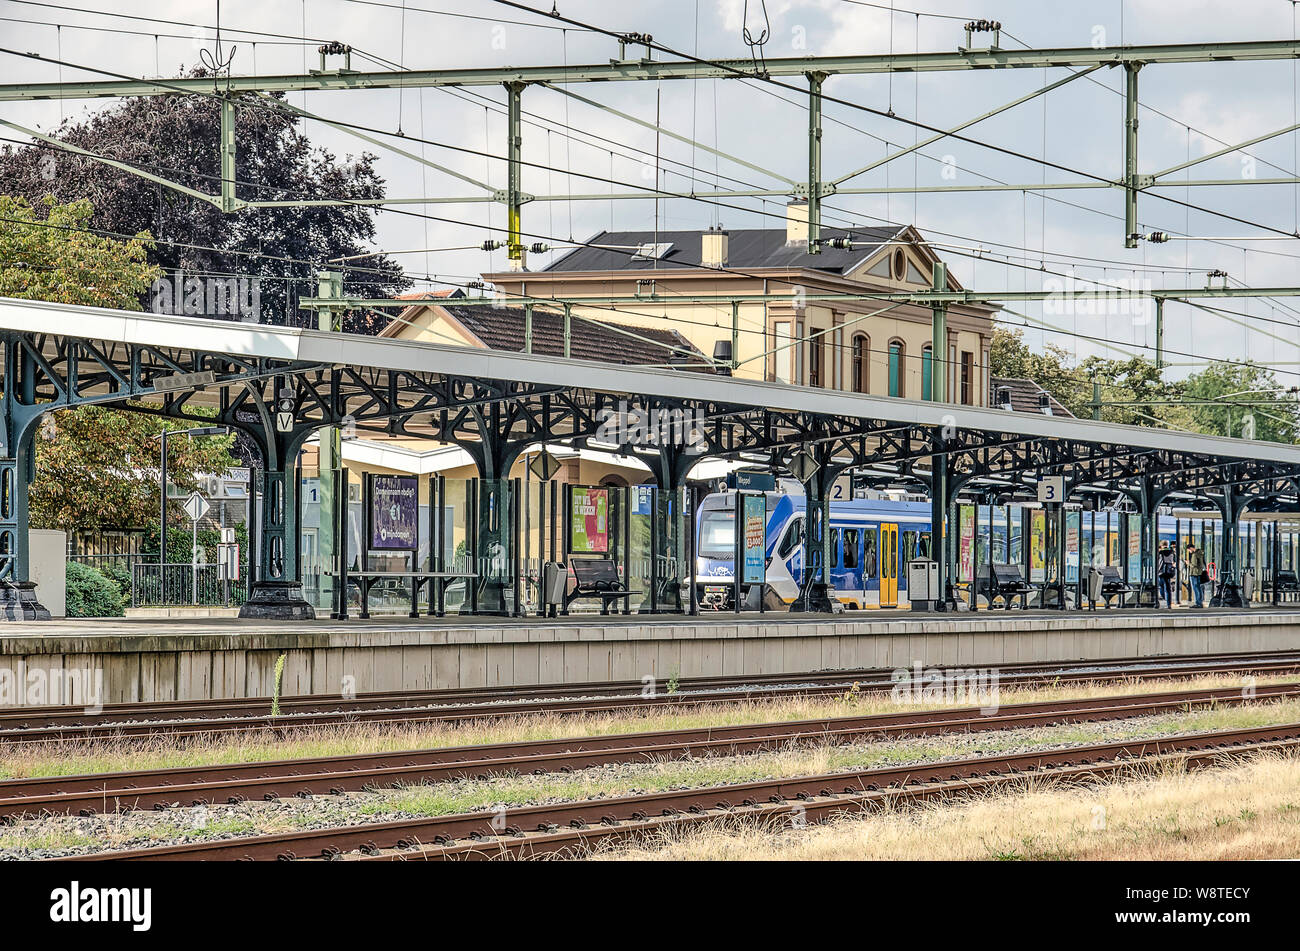 Meppel, aux Pays-Bas, le 26 juillet 2019 : des voies de chemin de fer , les câbles aériens et d'une plate-forme à la gare avec le bâtiment de la gare monumentale dans Banque D'Images